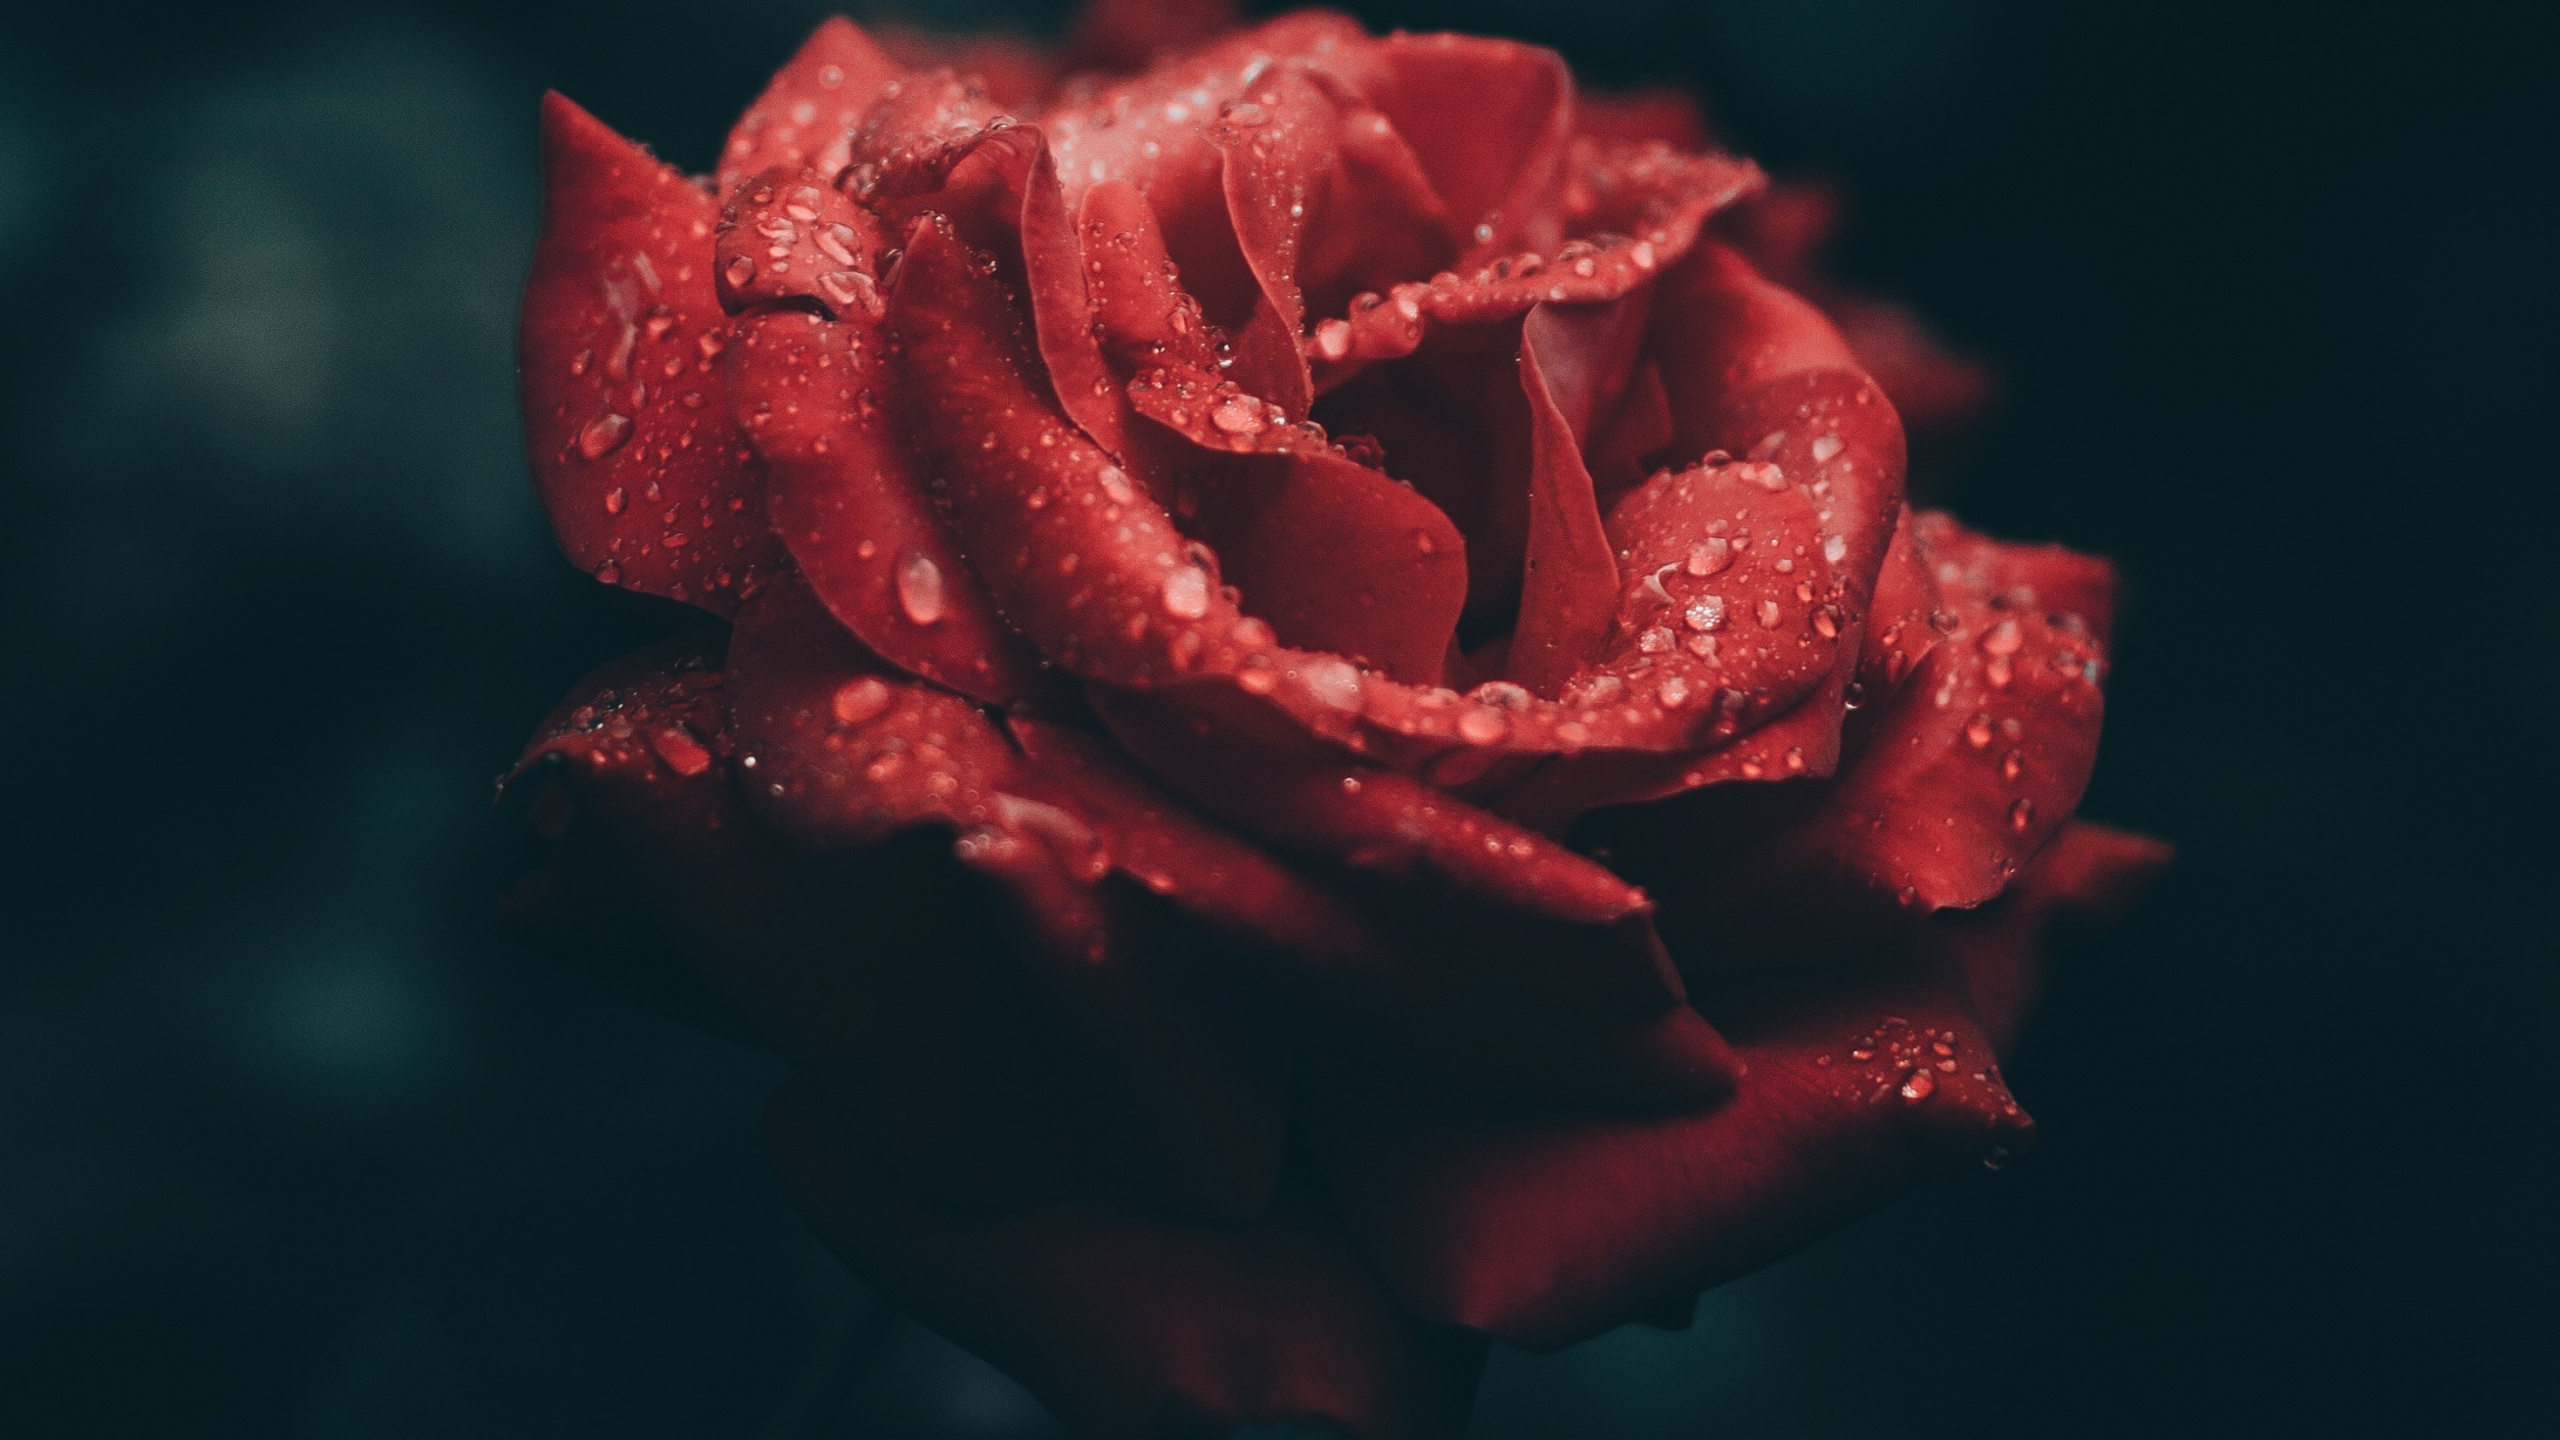 Rosa Roja en Fotografía de Cerca. Wallpaper in 2560x1440 Resolution